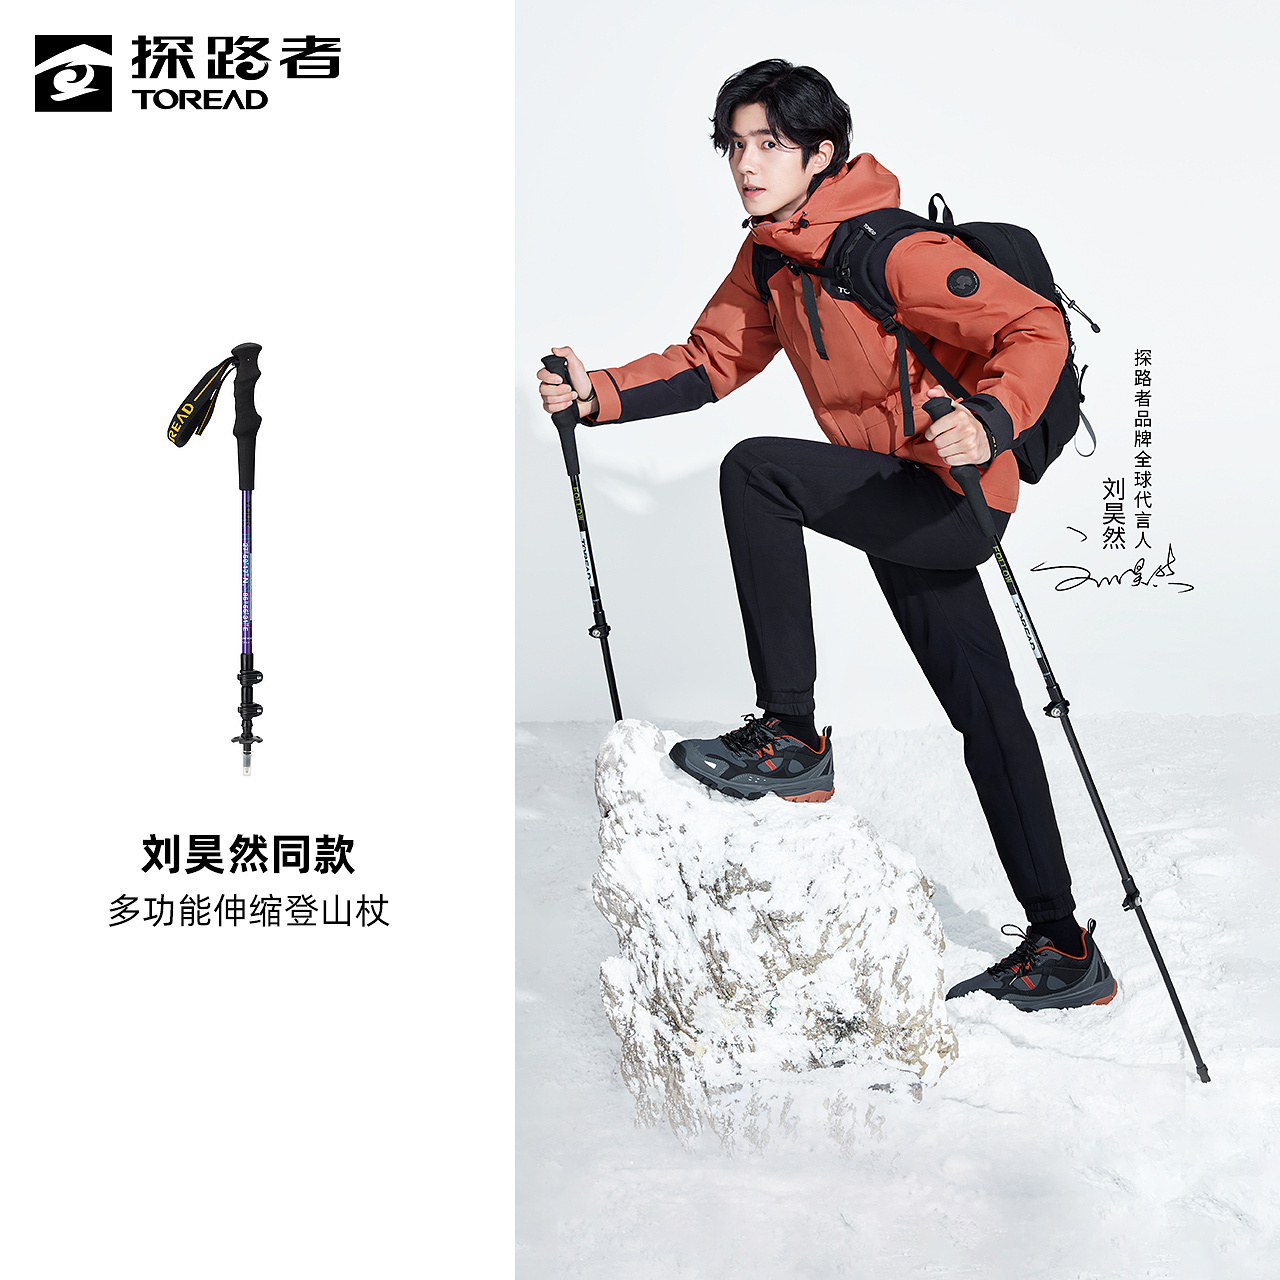 TOREAD 探路者 刘昊然同款探路者登山杖户外运动碳纤维爬山杖拐棍徒步防滑